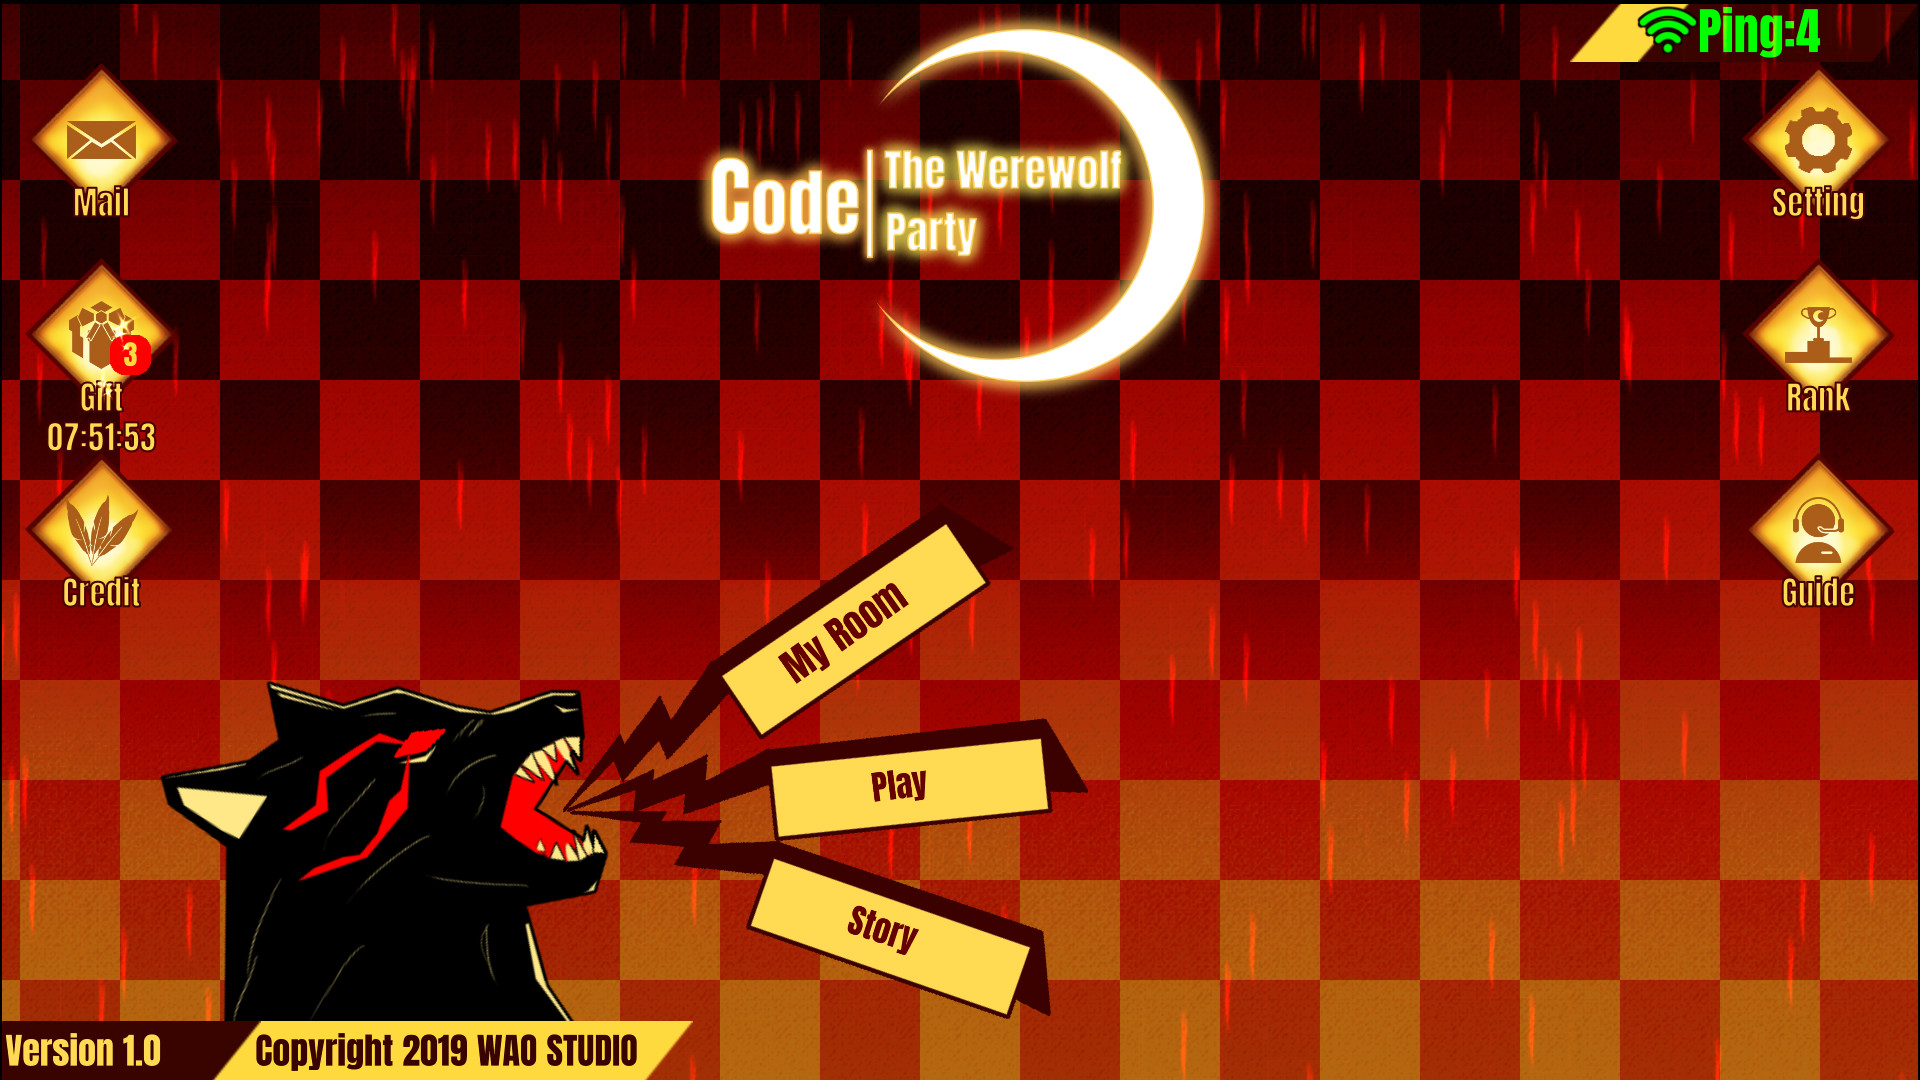 Code/The Werewolf Party - Metacritic